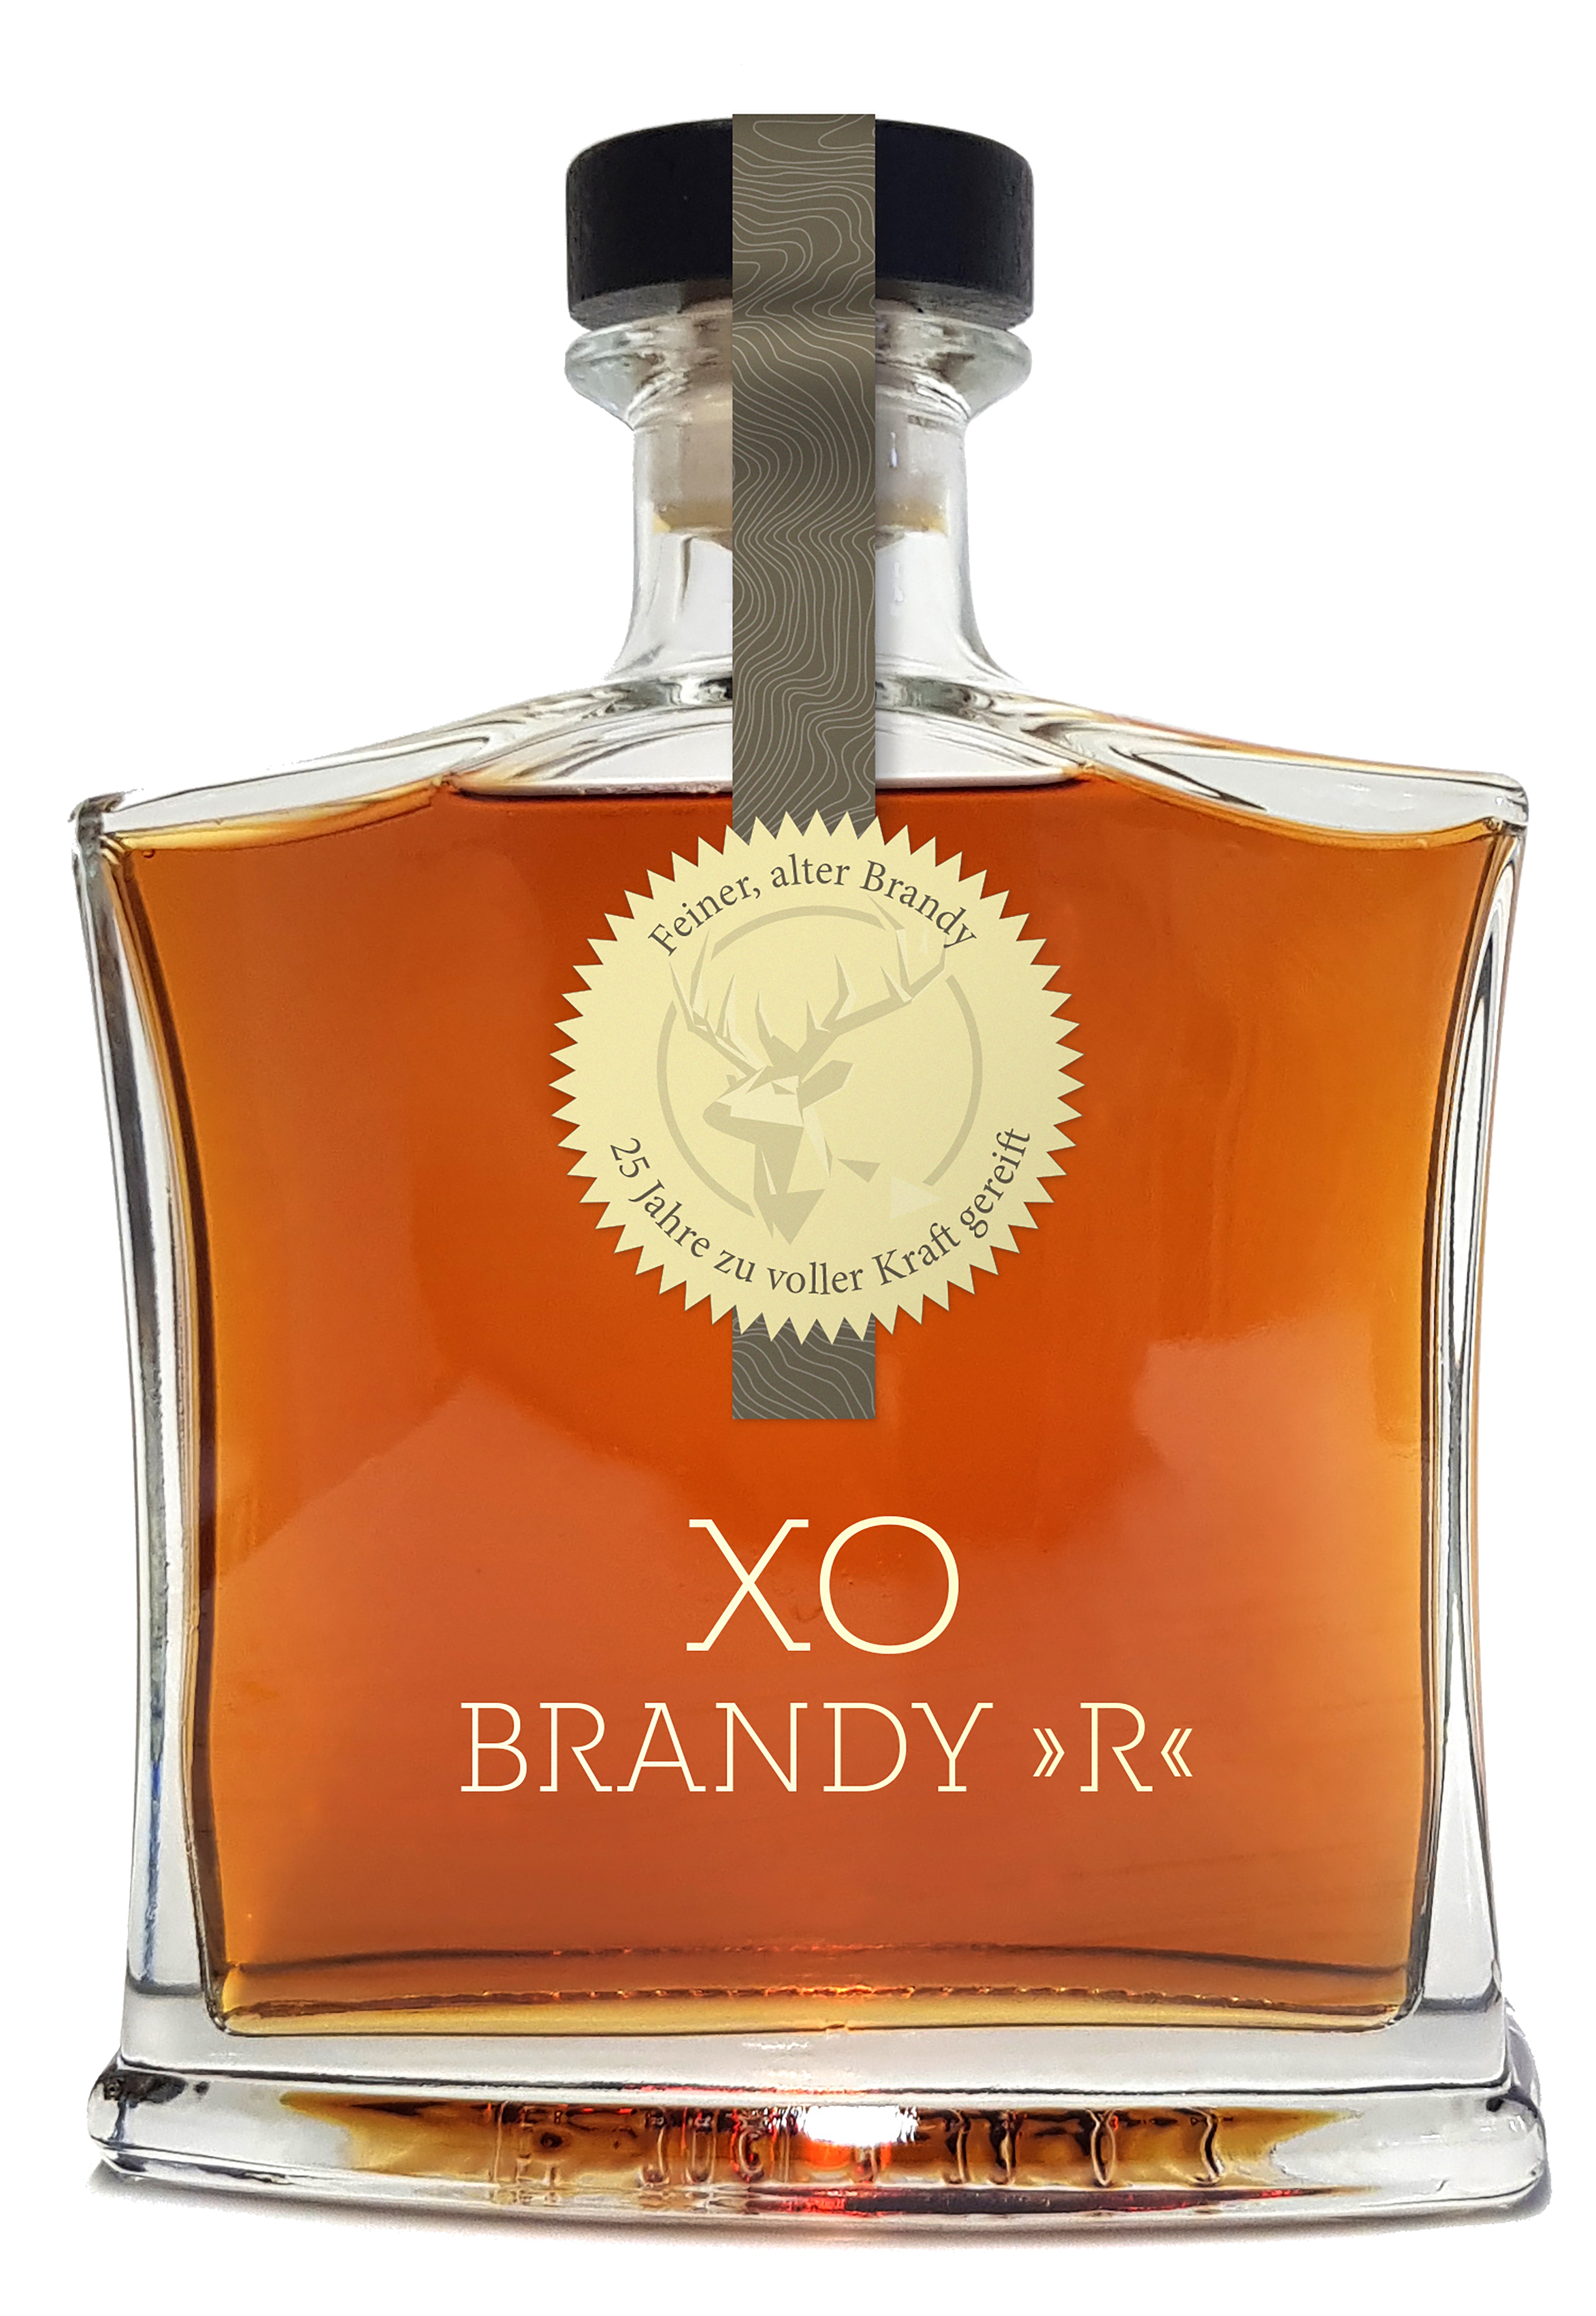 XO Brandy "R"